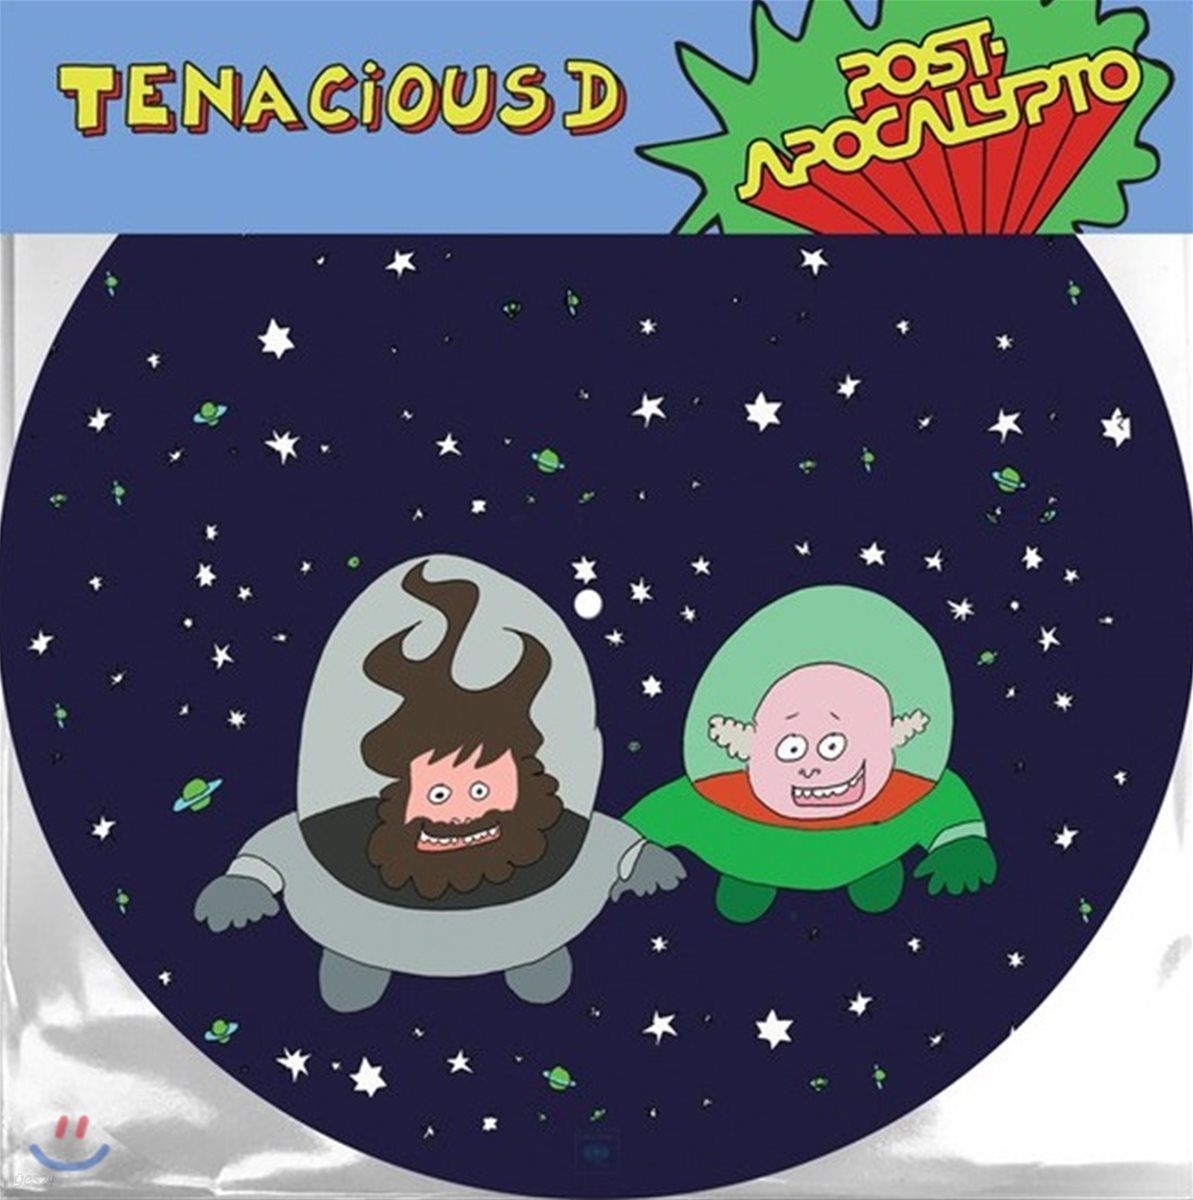 포스트 아포칼립토 애니메이션 음악 (Post-Apocalypto OST by Tenacious D) [픽처 디스크 LP]